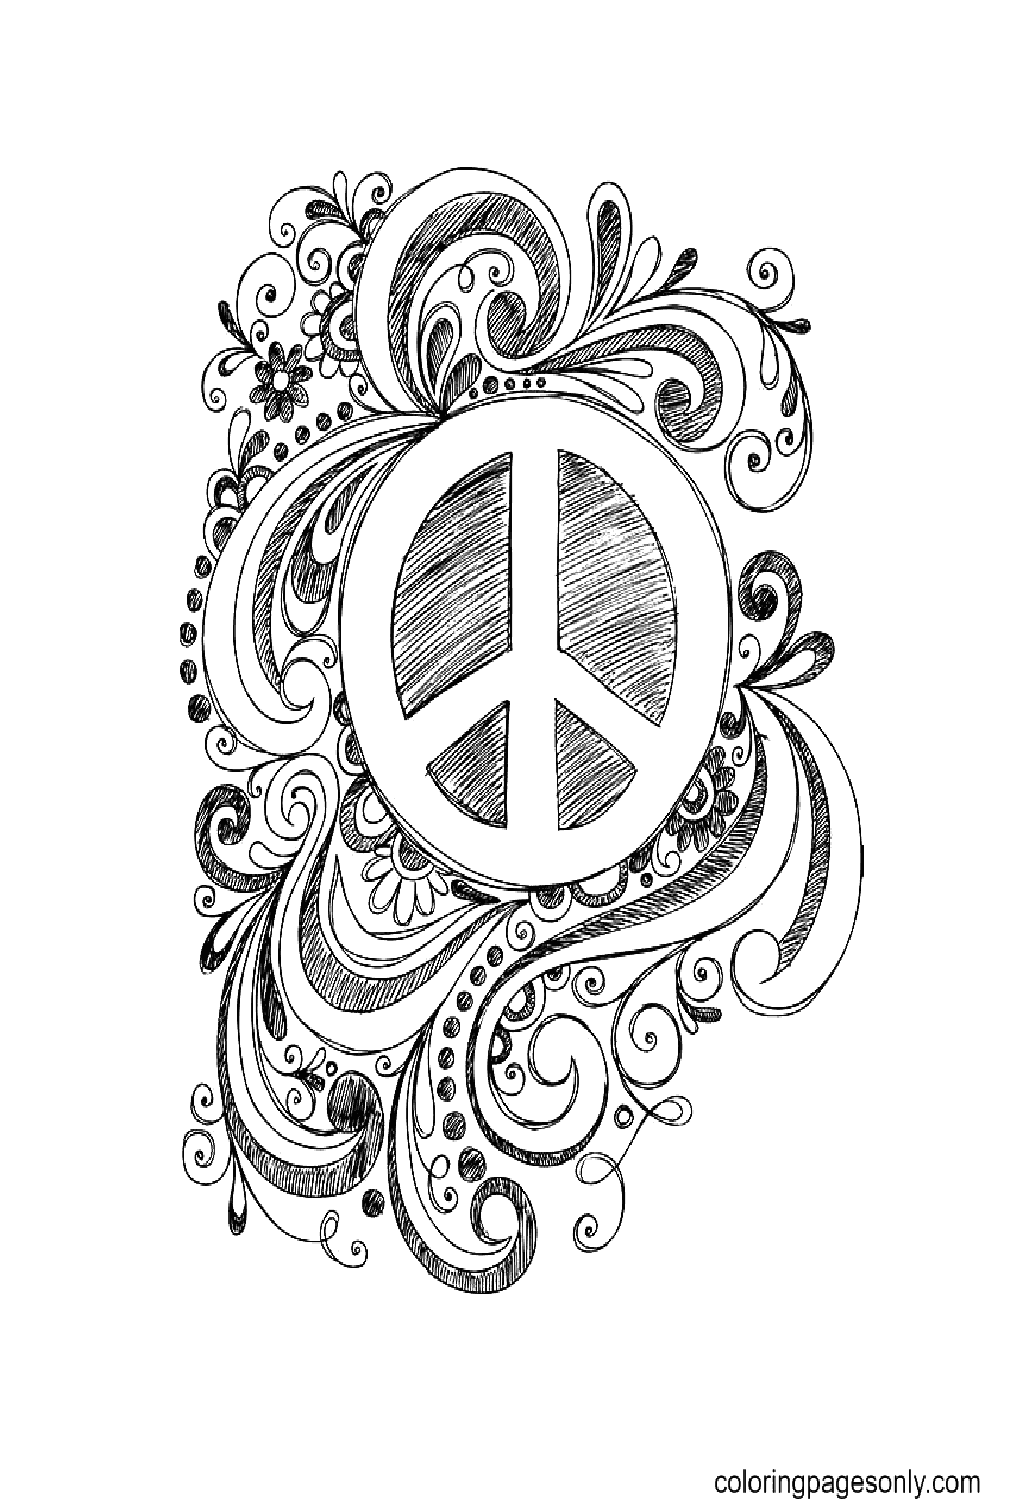 Sinal de paz para impressão gratuita do Dia Internacional da Paz